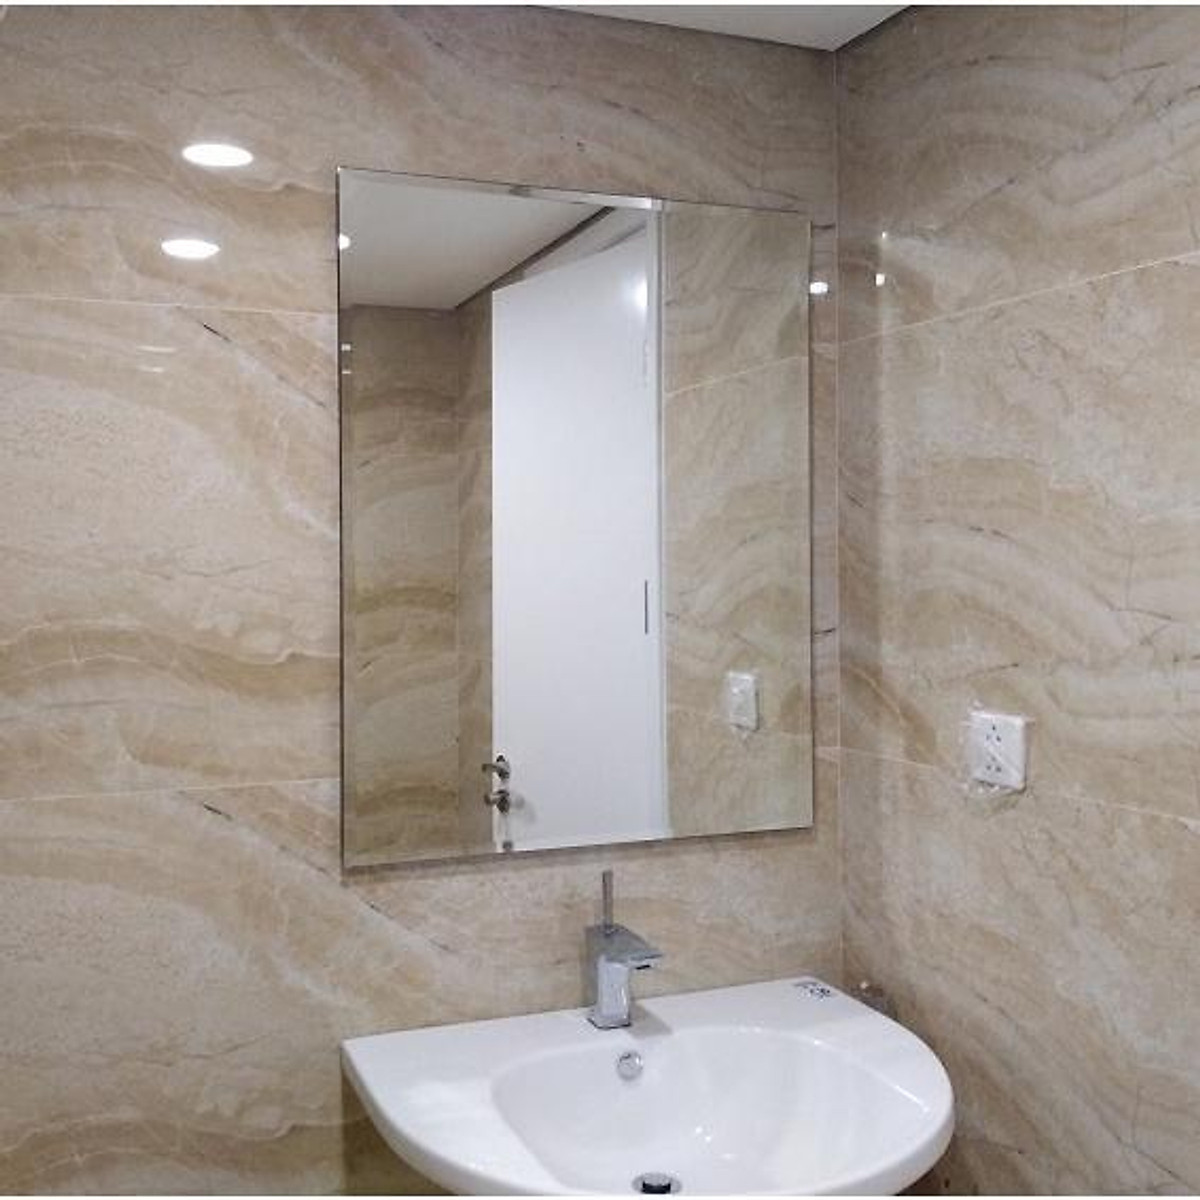 Gương phòng tắm cao cấp giúp cho không gian vệ sinh của bạn trở nên sang trọng và đẳng cấp hơn. Với các thiết kế tinh tế và chất lượng vượt trội, gương phòng tắm sẽ mang đến cho bạn một trải nghiệm thực sự tuyệt vời. Hãy tham khảo và lựa chọn sản phẩm của chúng tôi để trang trí cho không gian phòng tắm của bạn.